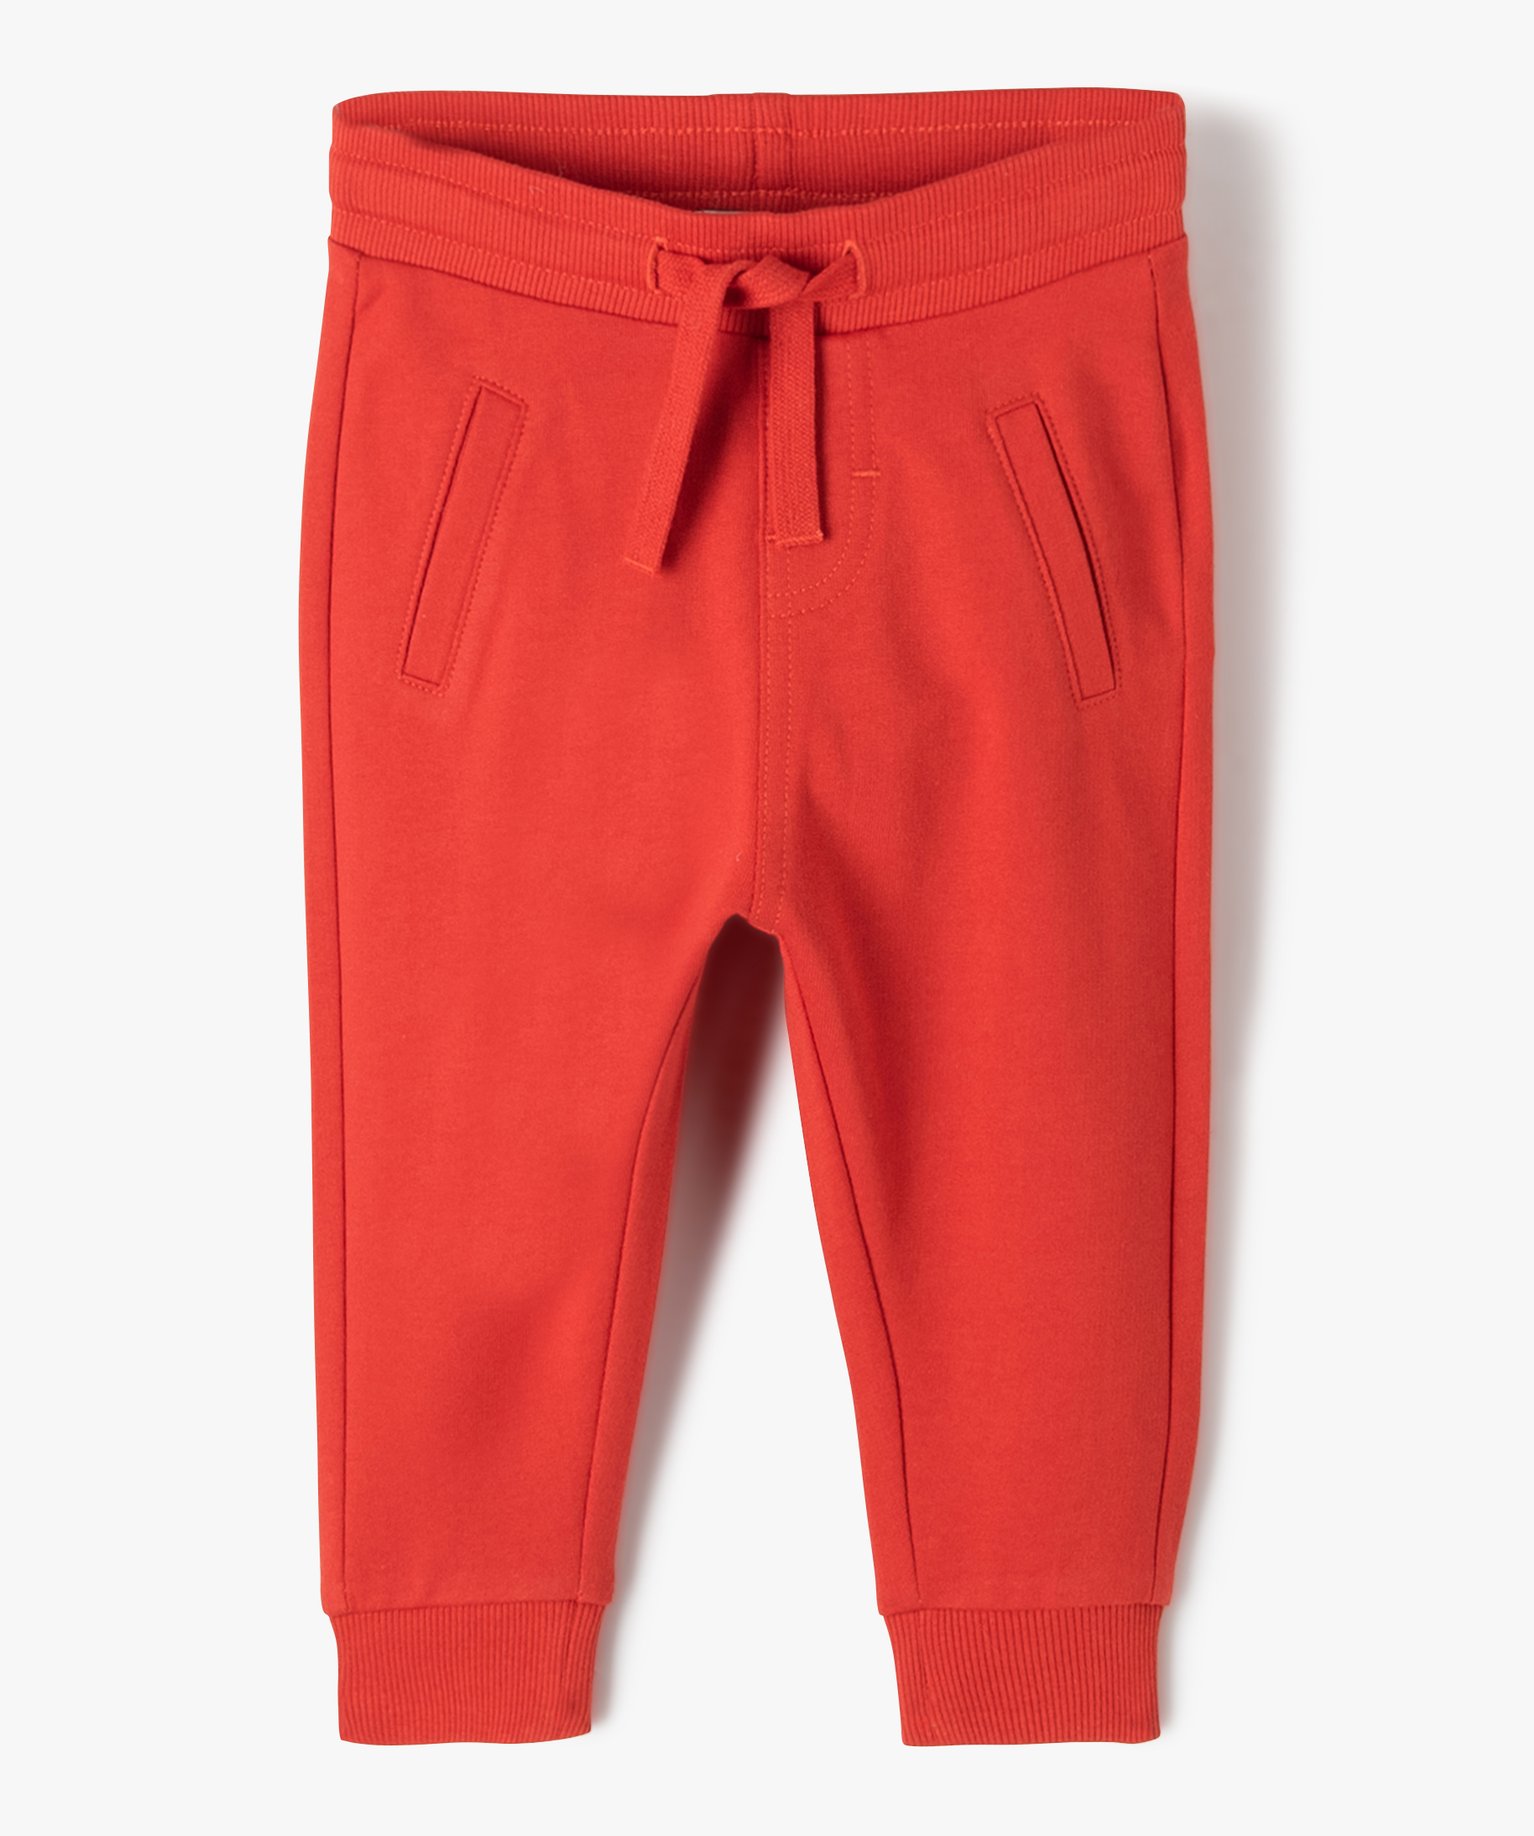 pantalon bebe garcon en maille avec ceinture bord-cote rouge